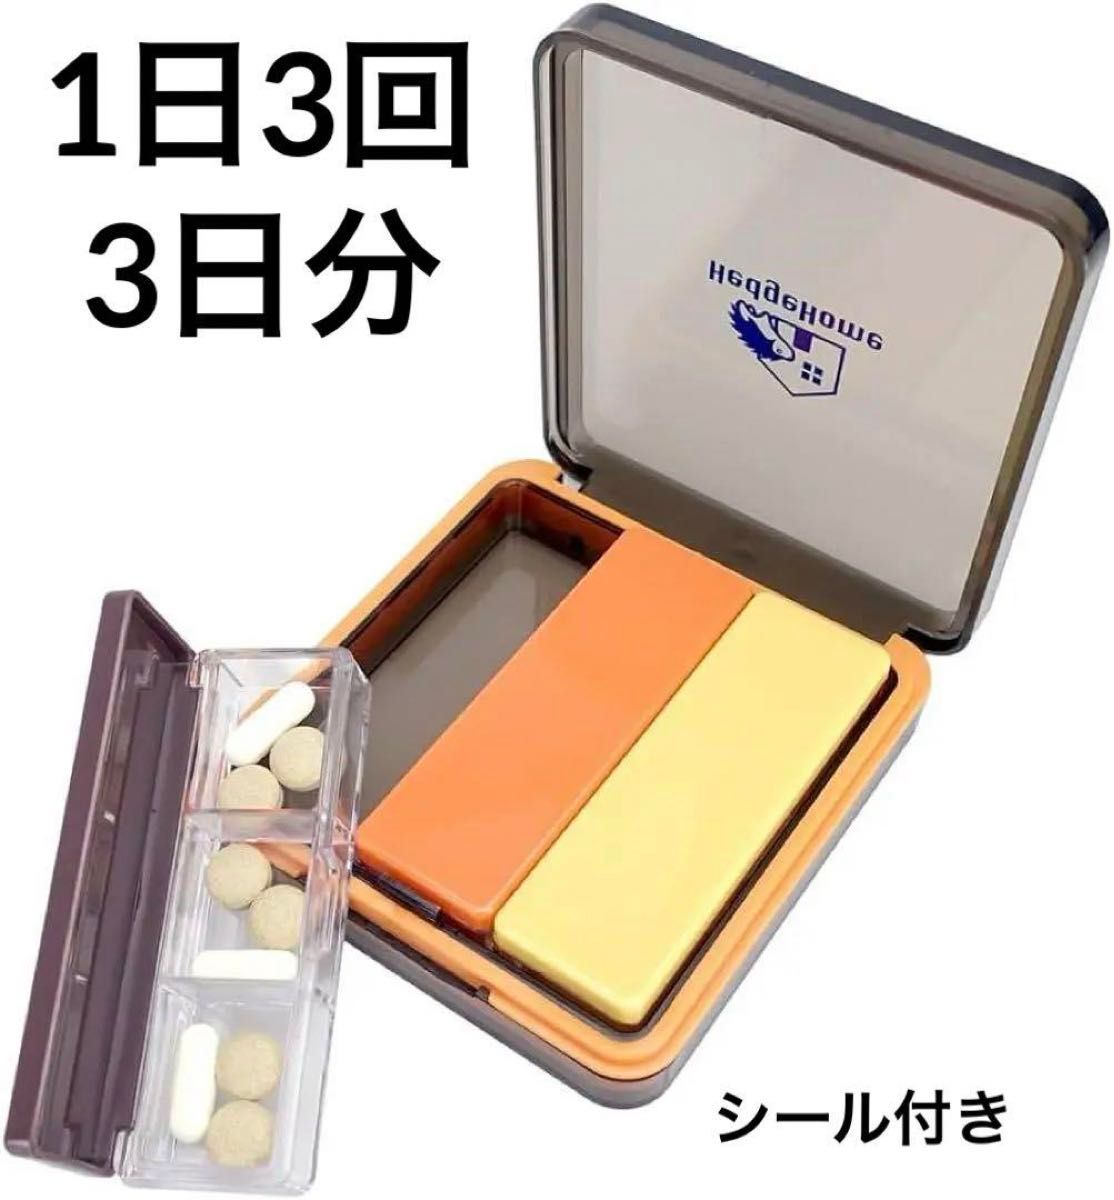 【3日分】ピルケース 1日3回 薬ケース コンパクト サプリケース